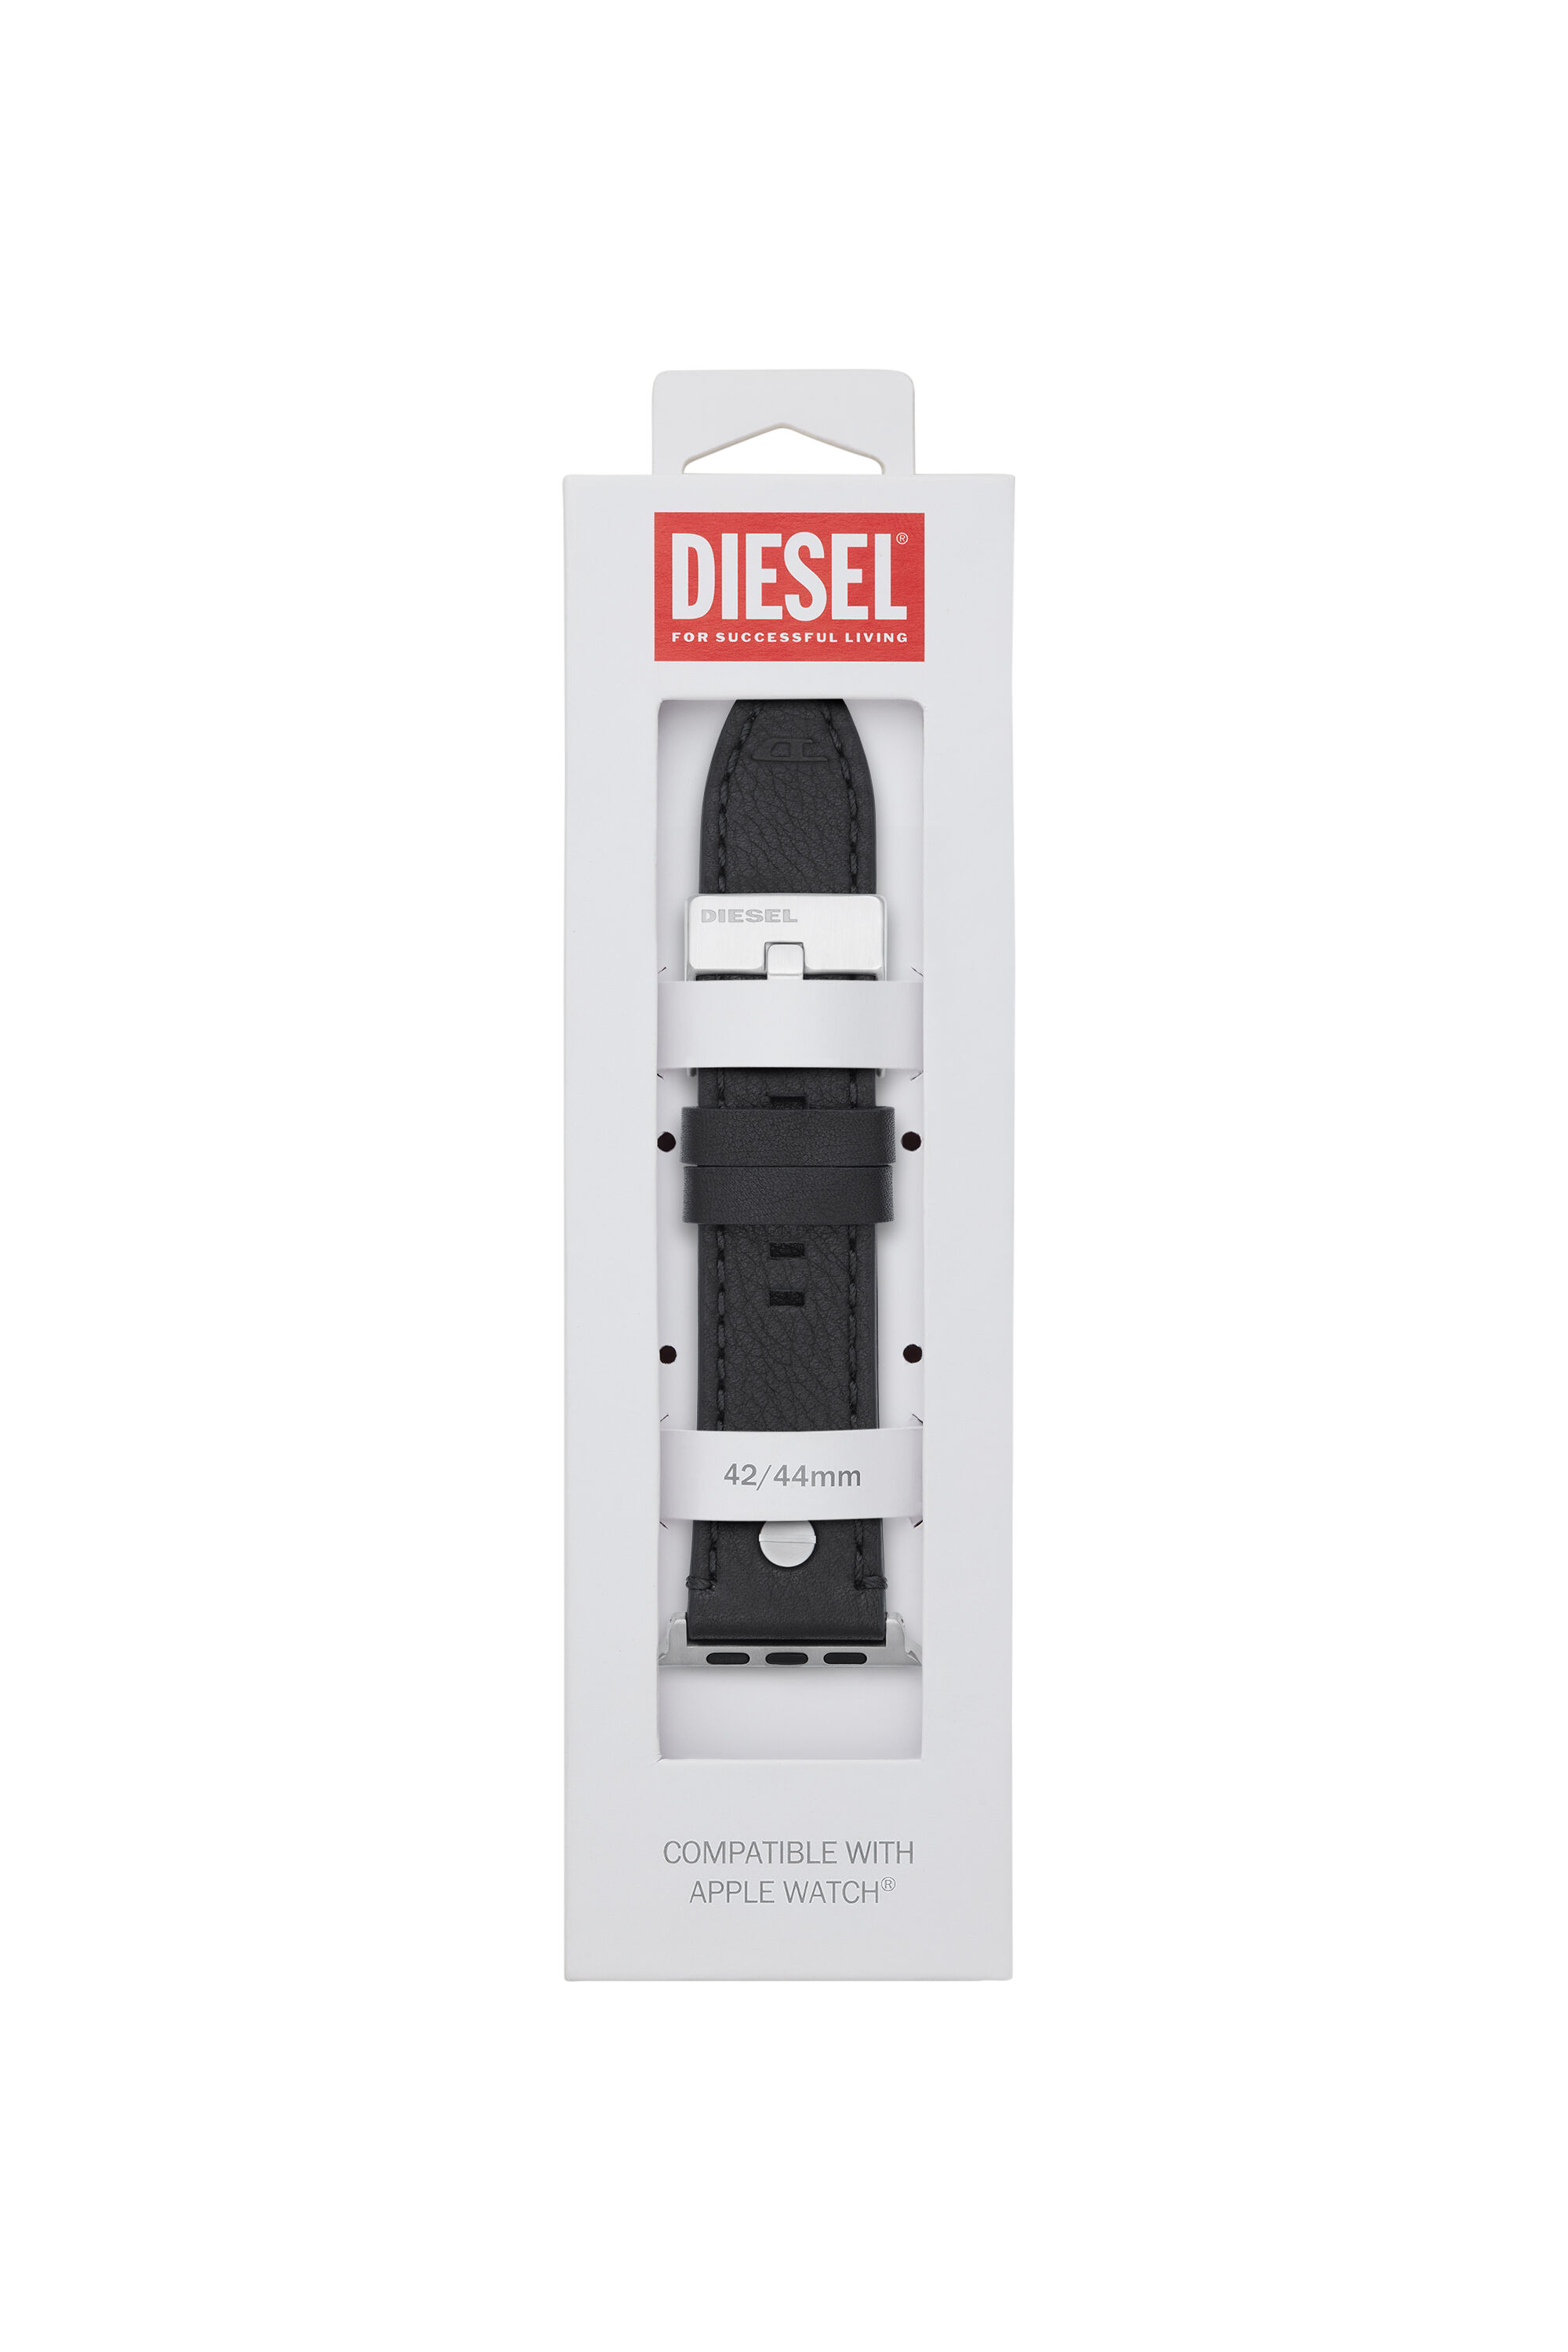 Diesel - DSS001, Negro - Image 2